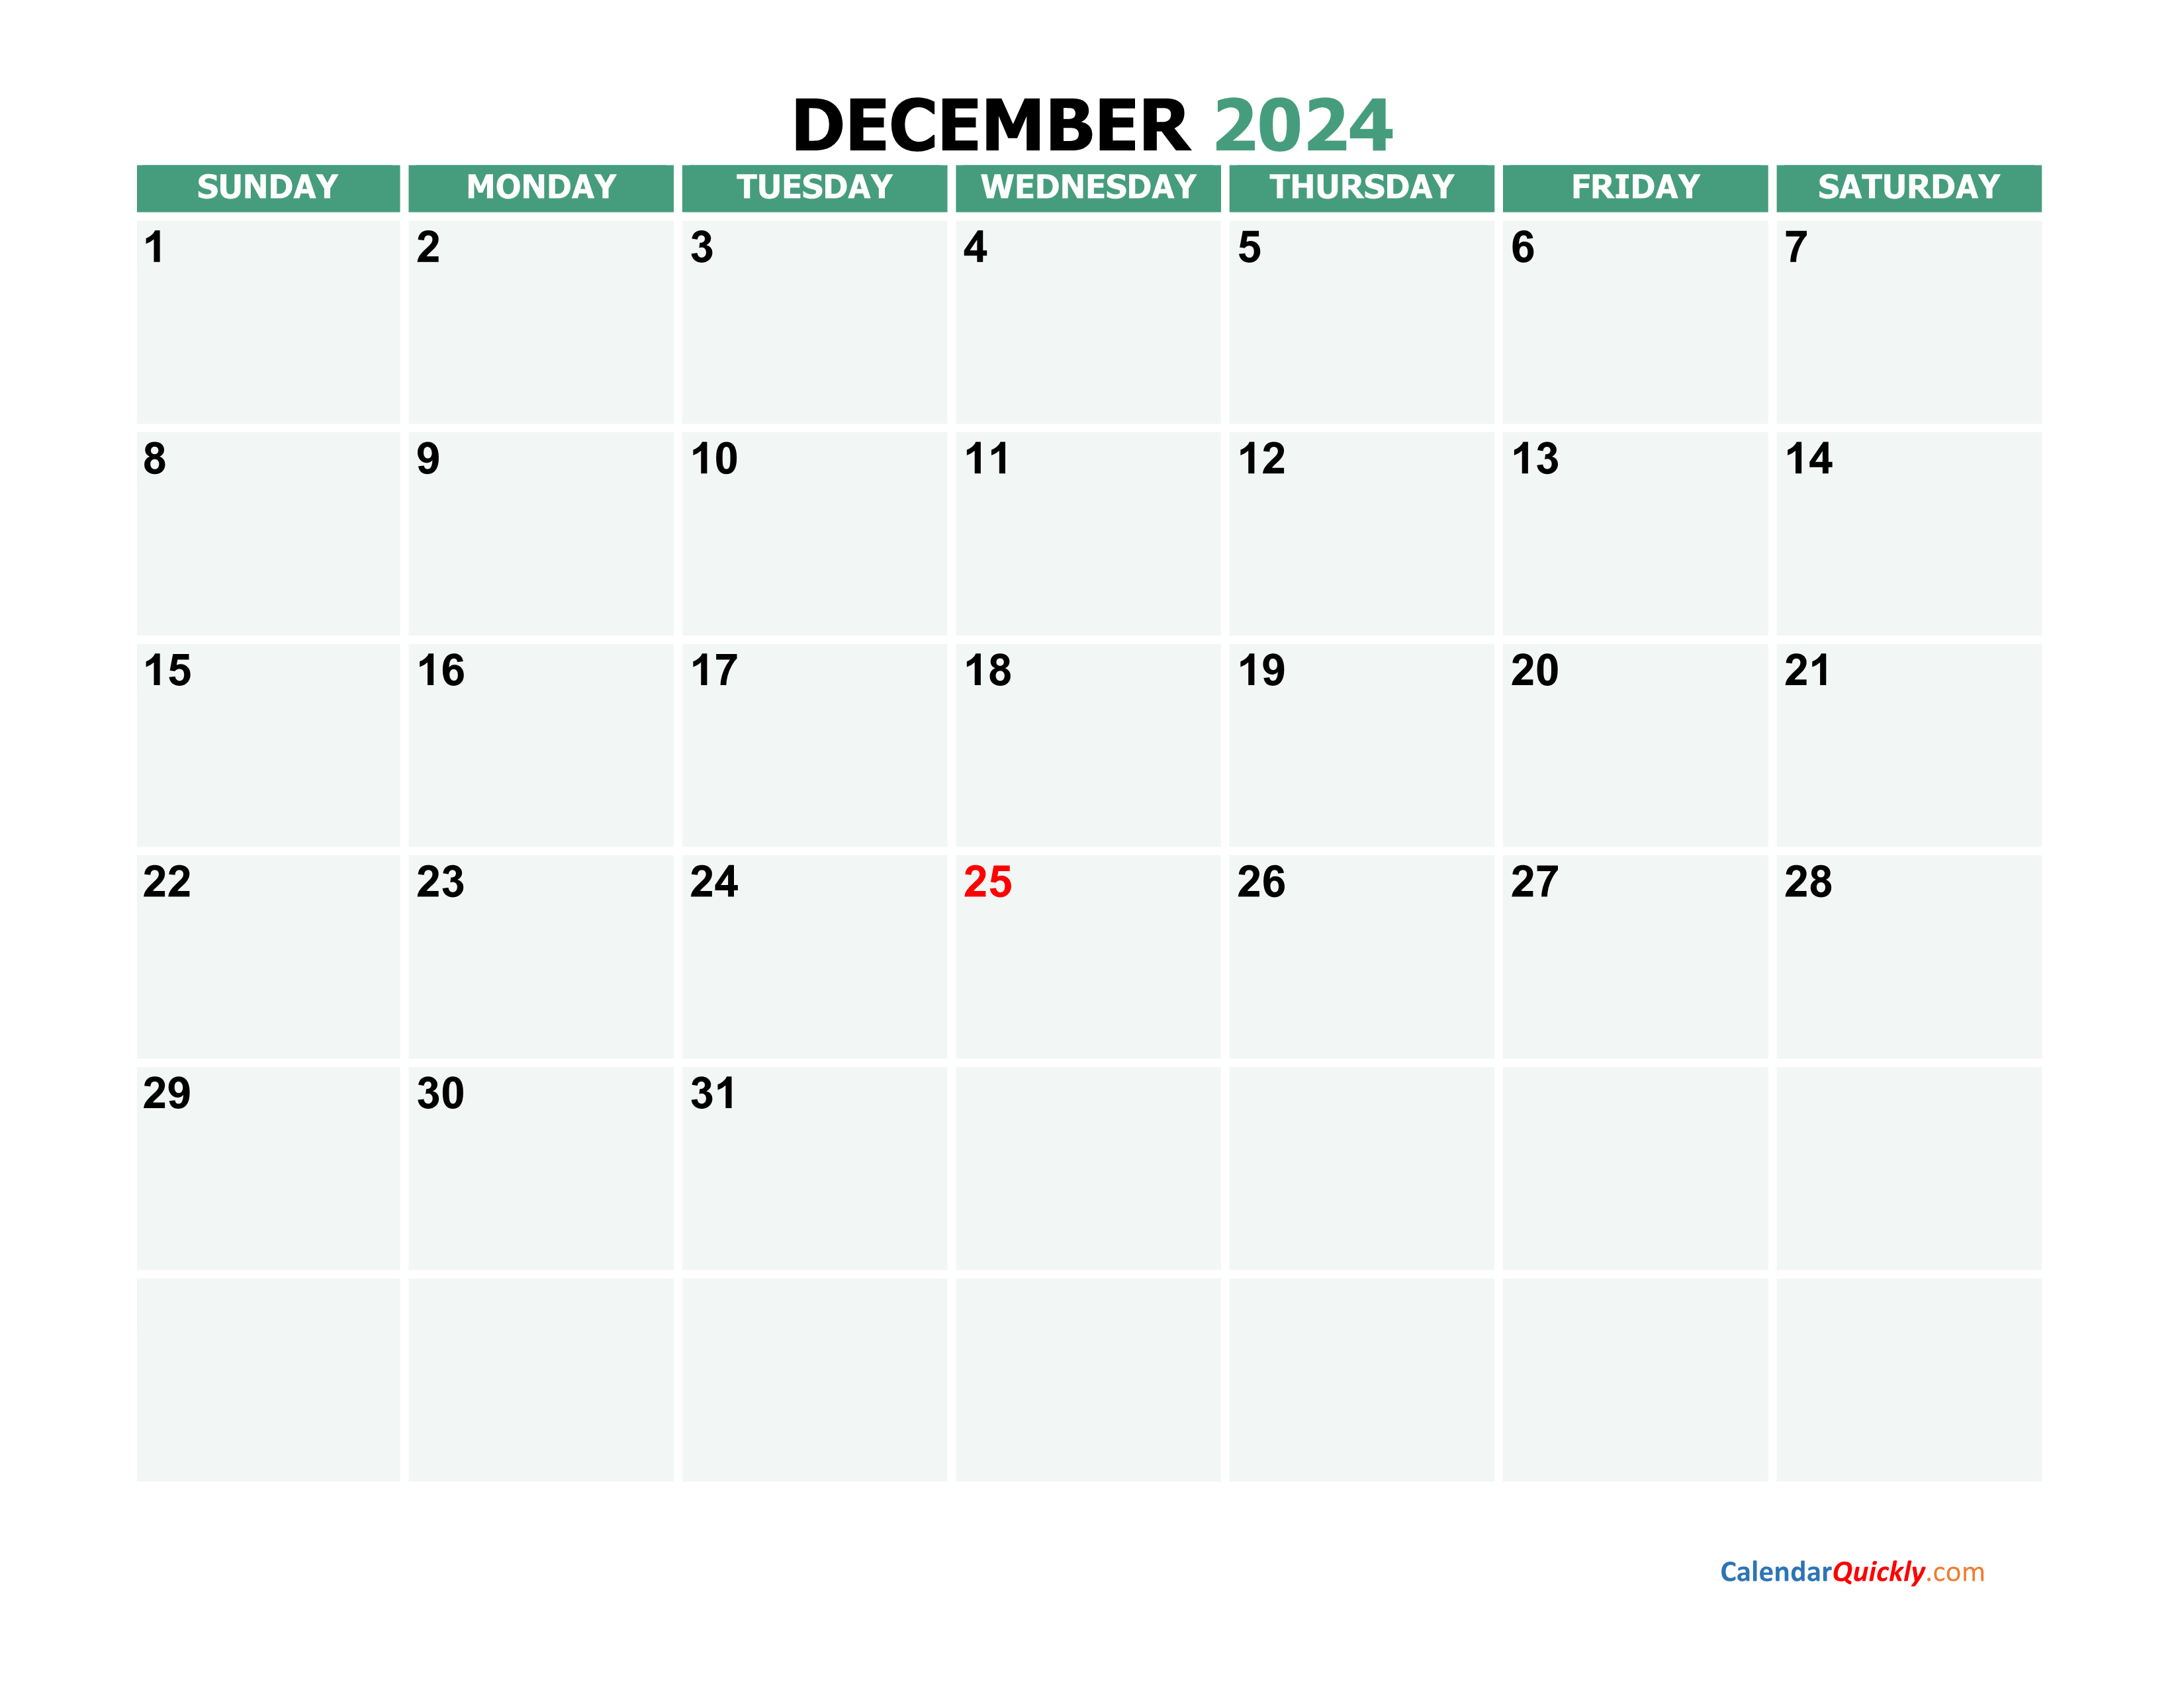 december-2024-printable-calendar-calendar-quickly